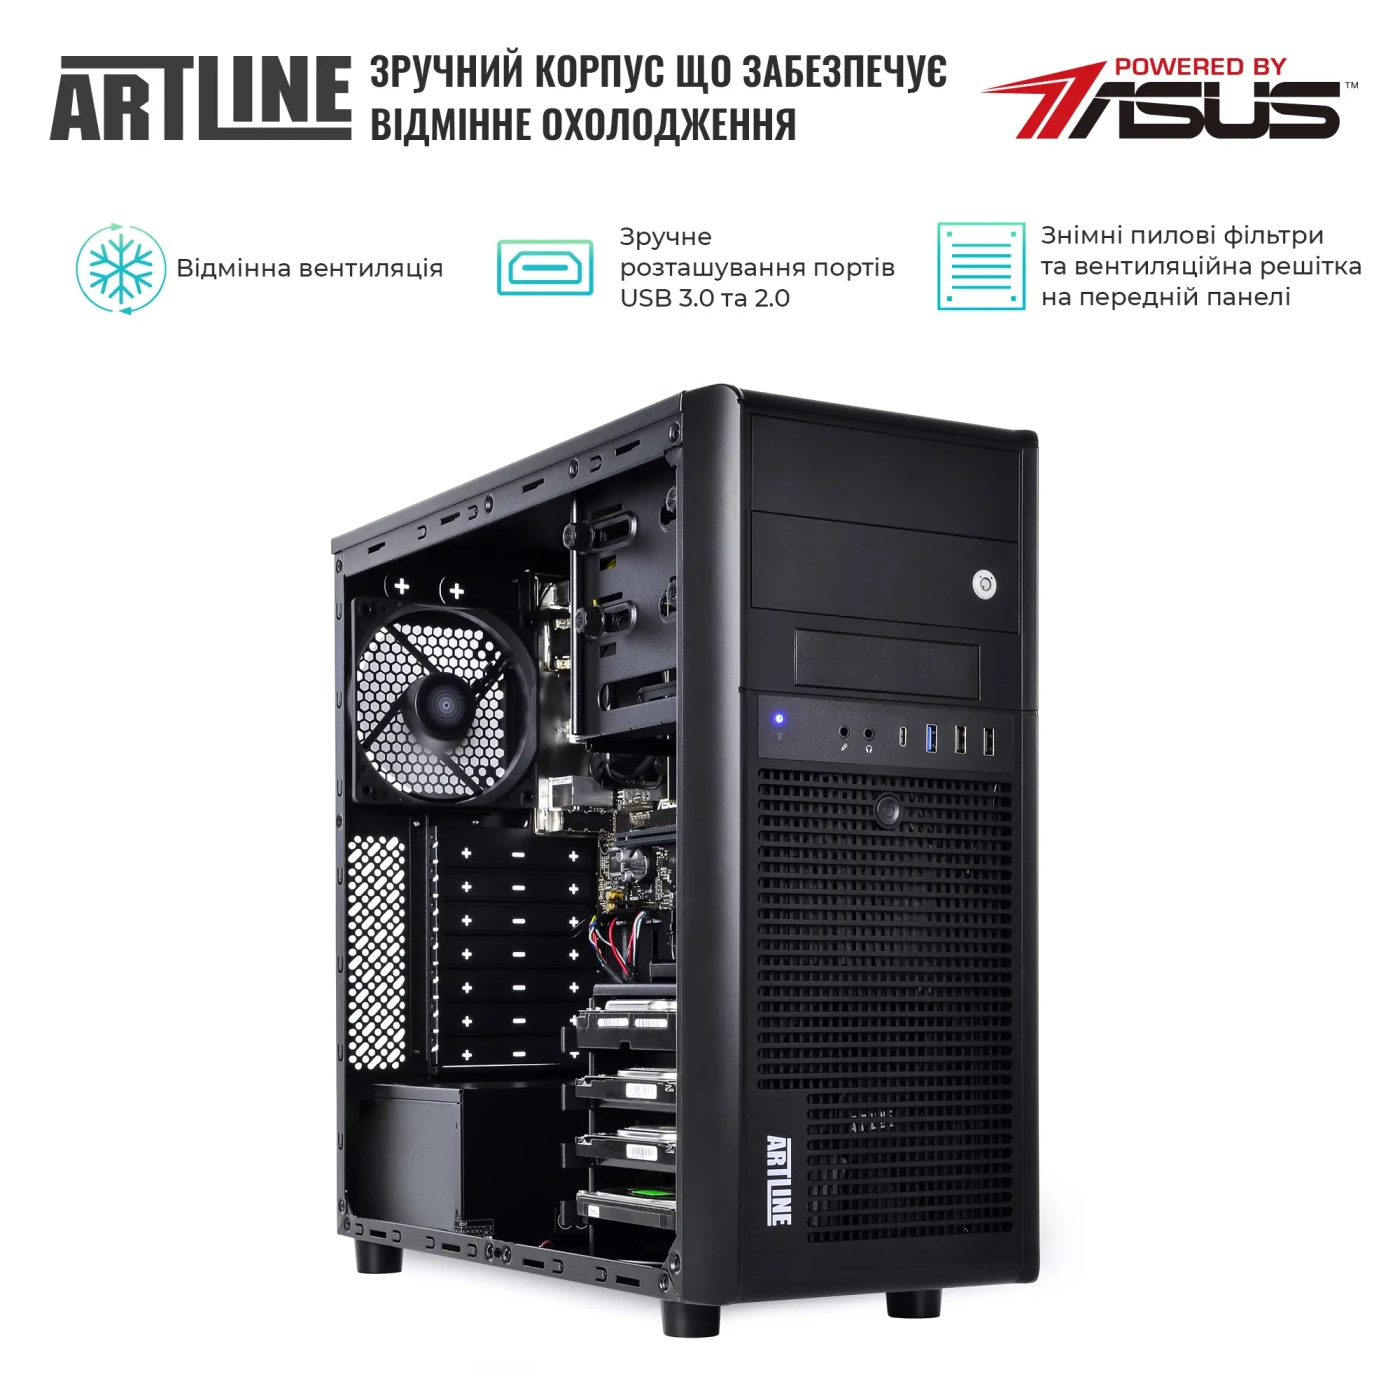 Купить Сервер ARTLINE Business T37 (T37v39) - фото 3